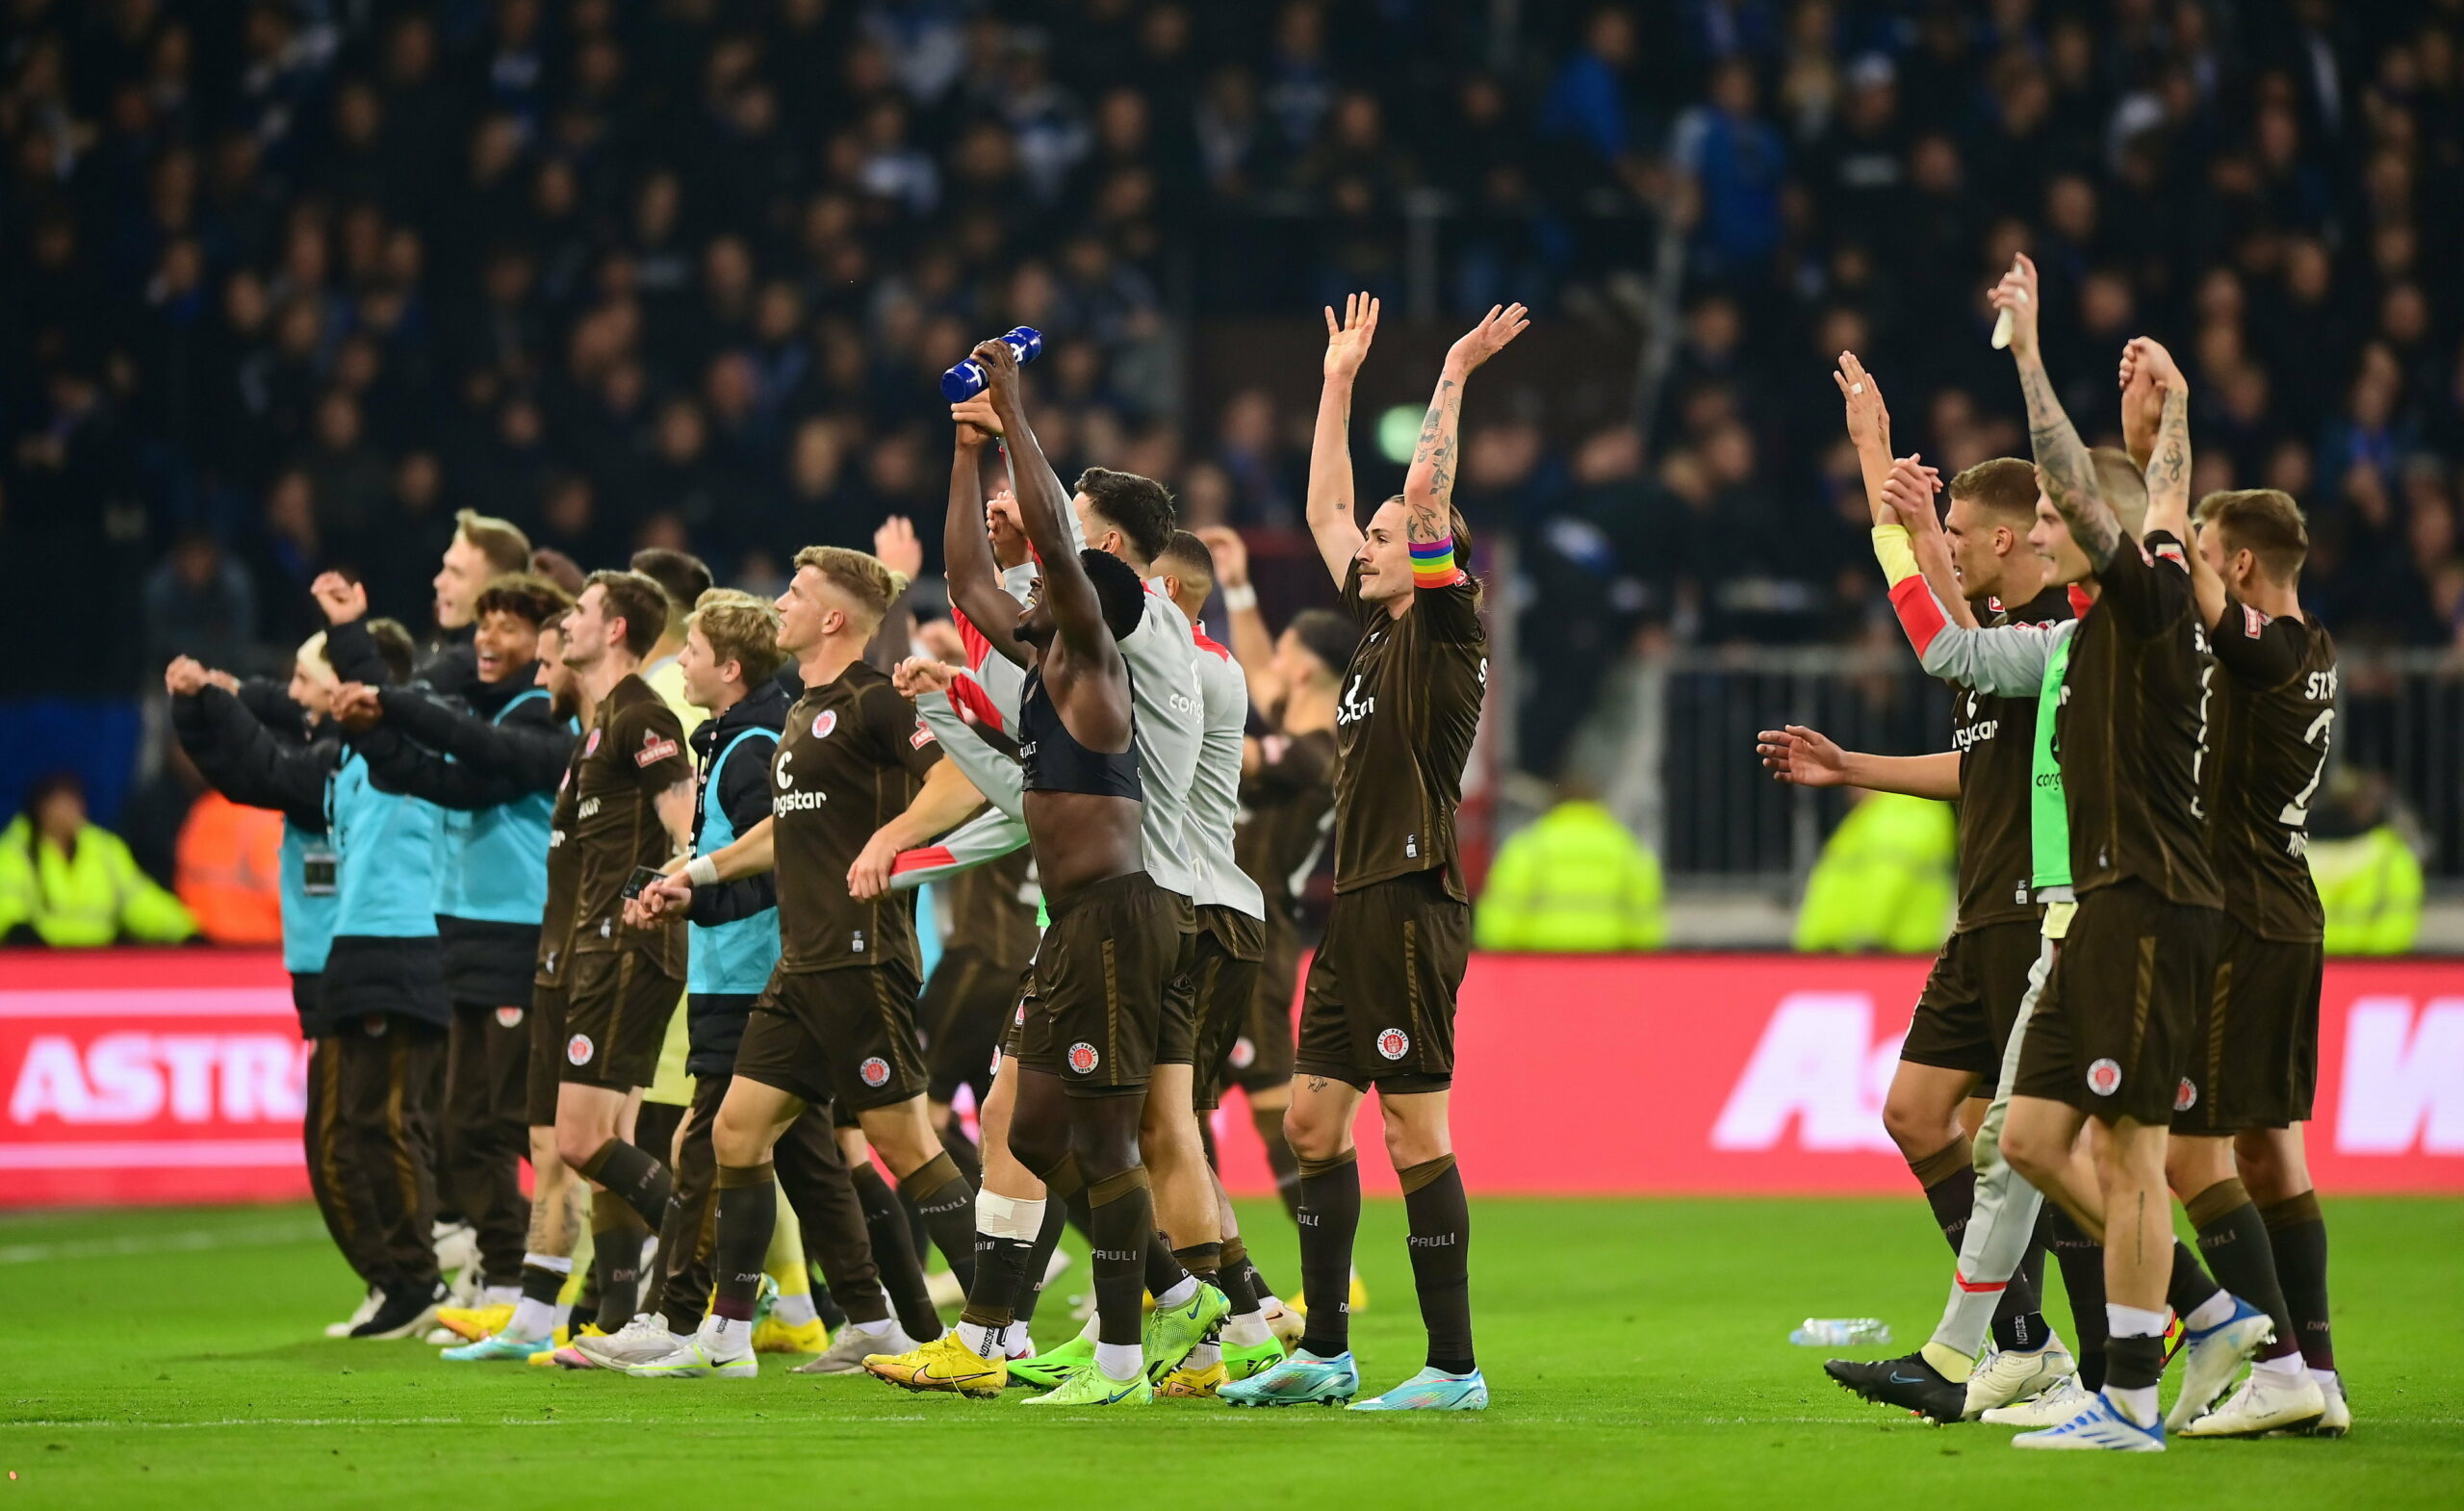 Der FC St. Pauli feiert den Derbysieg. Beim 3:0-Erfolg über den HSV wusste jeder Akteur zu überzeugen.